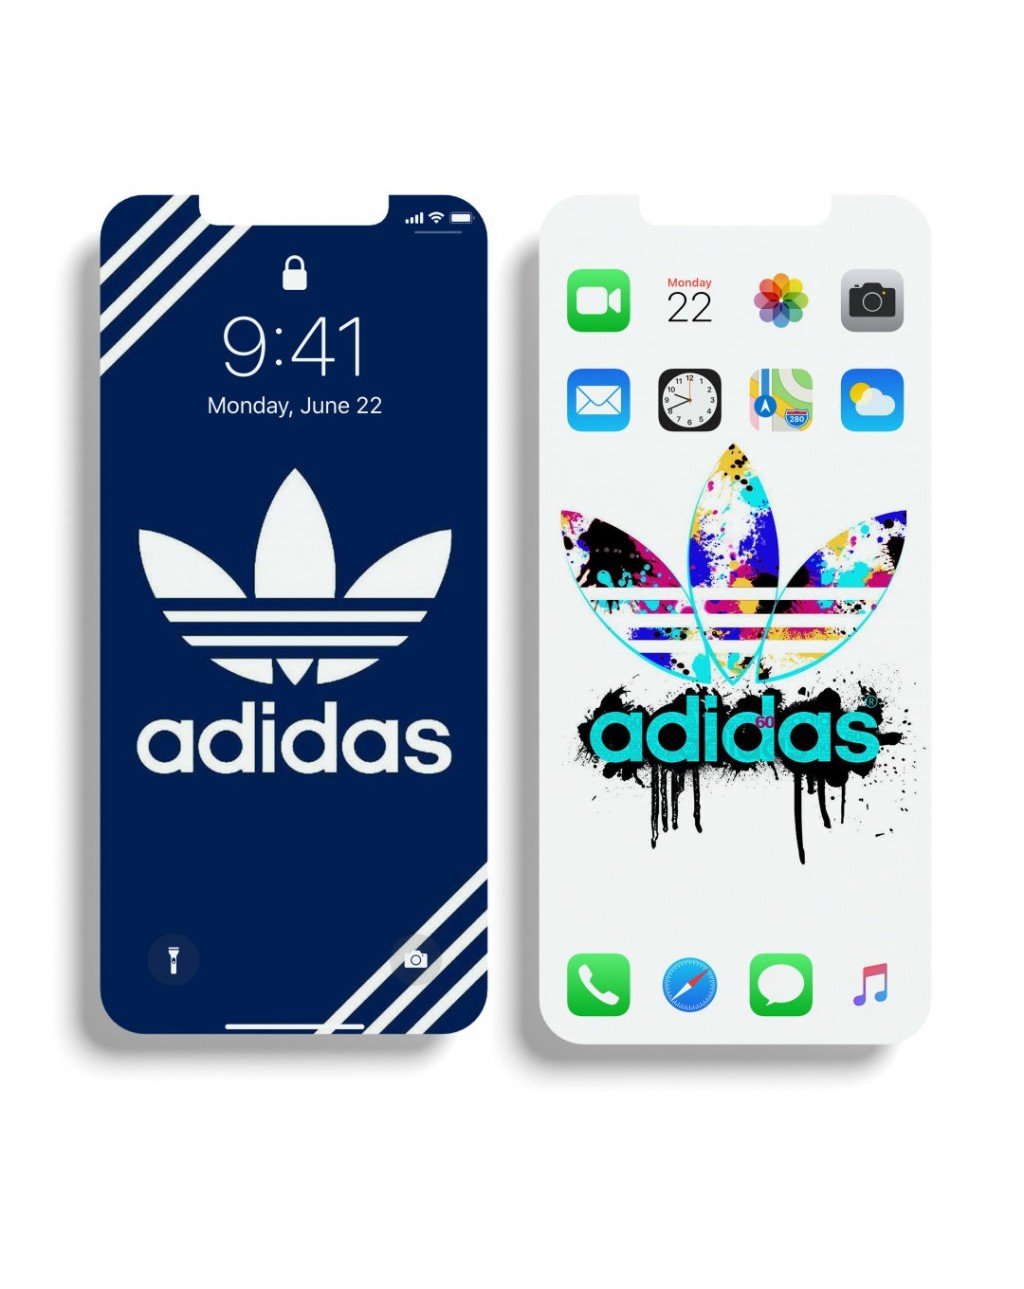 阿迪达斯adidas酷帅运动品牌手机壁纸